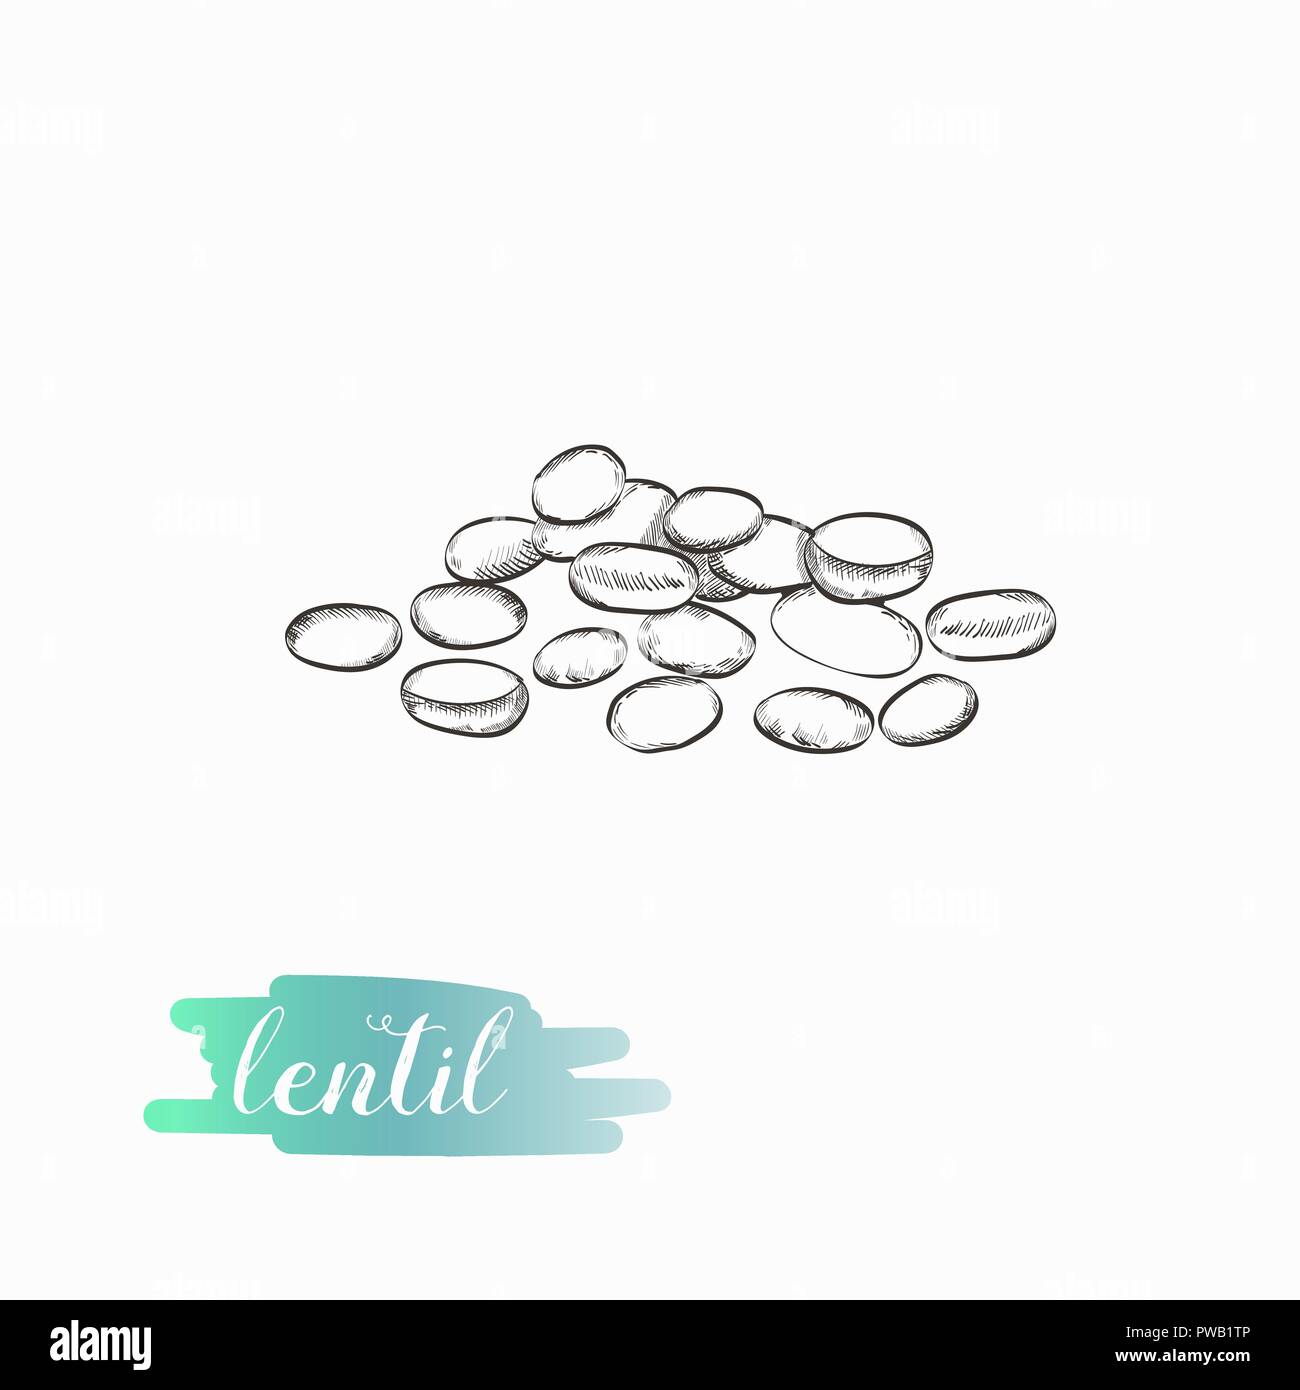 Lentil hand drawn illustration isolated on white background. Lentil grains vector illustration. Stock Vector